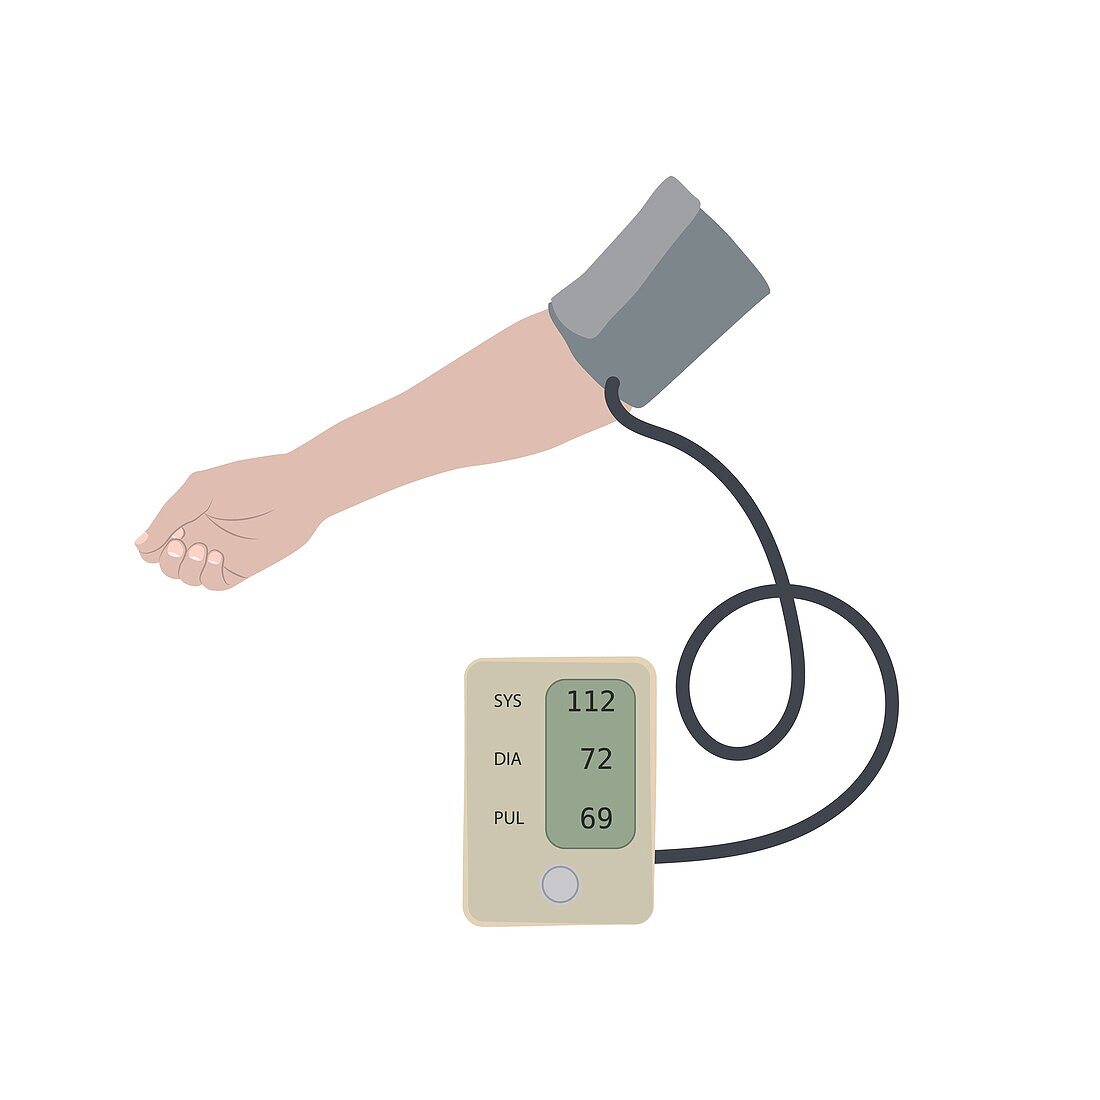 Normal blood pressure, illustration